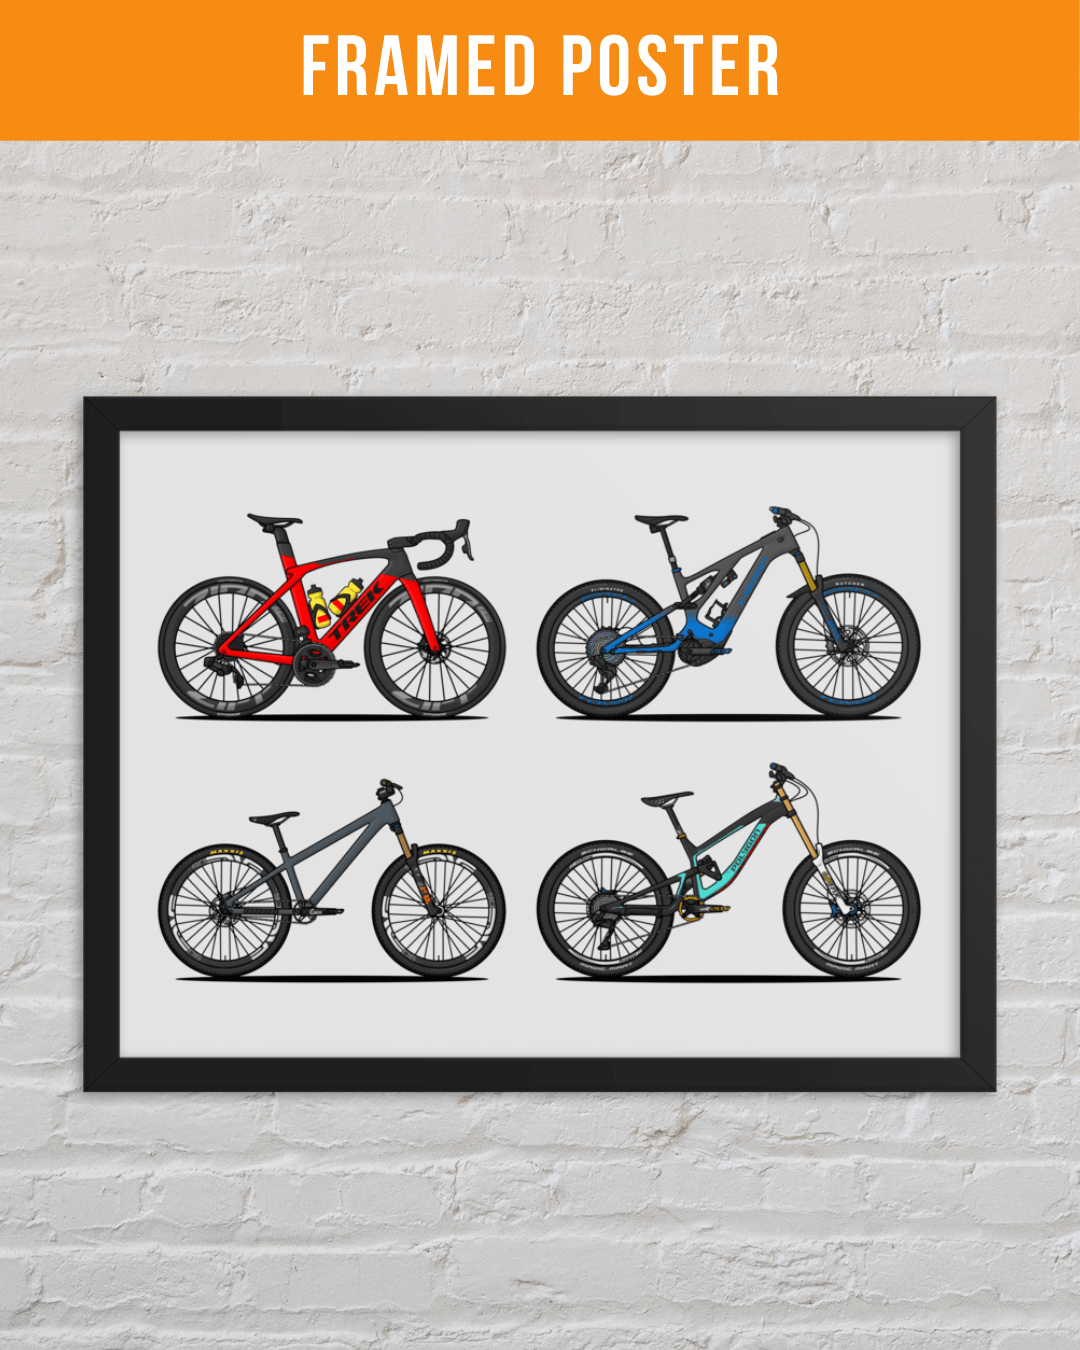 Draw My Bikes (4) | Personalized Print